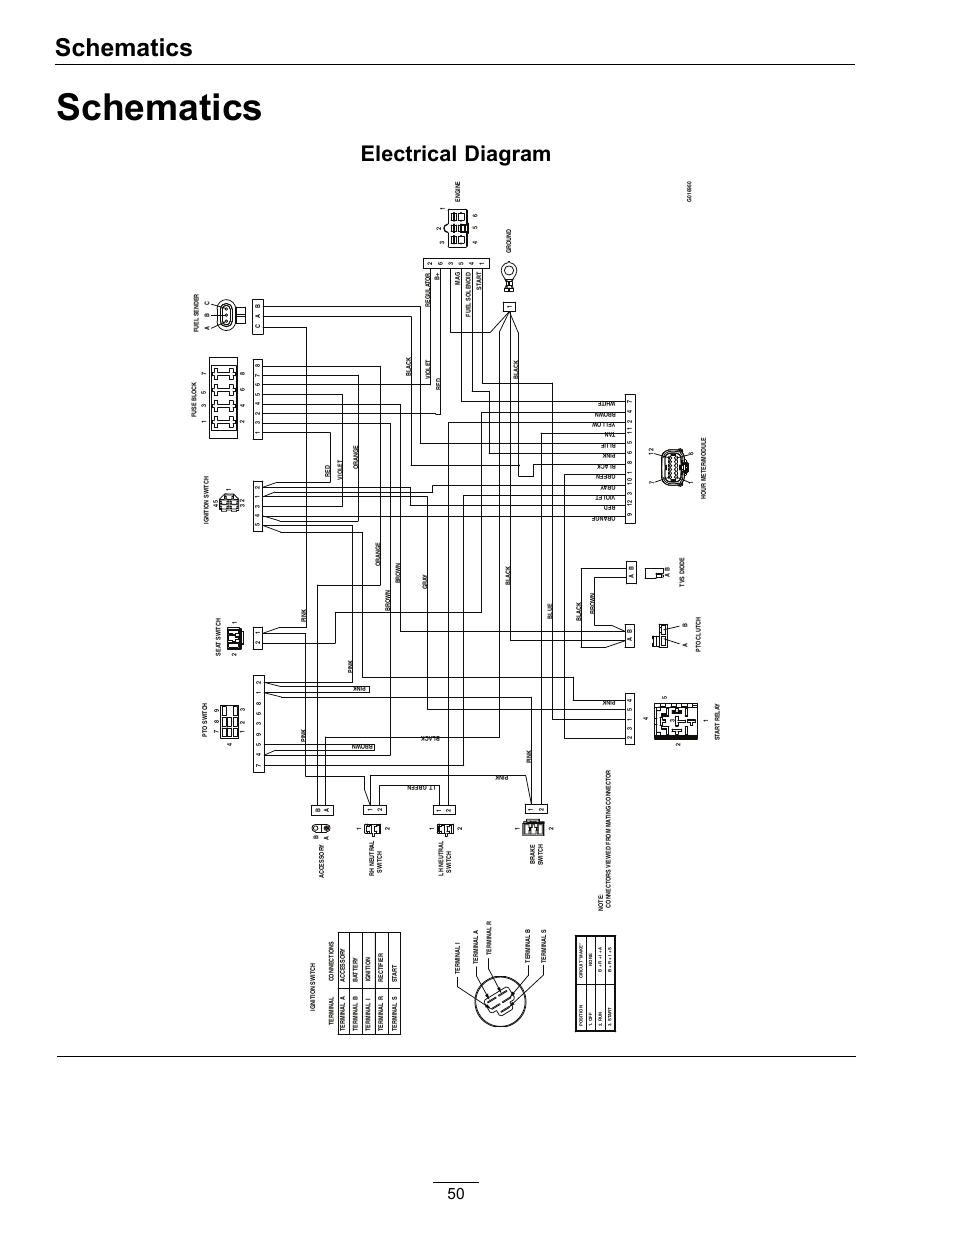 motorized bicycle wiring diagram